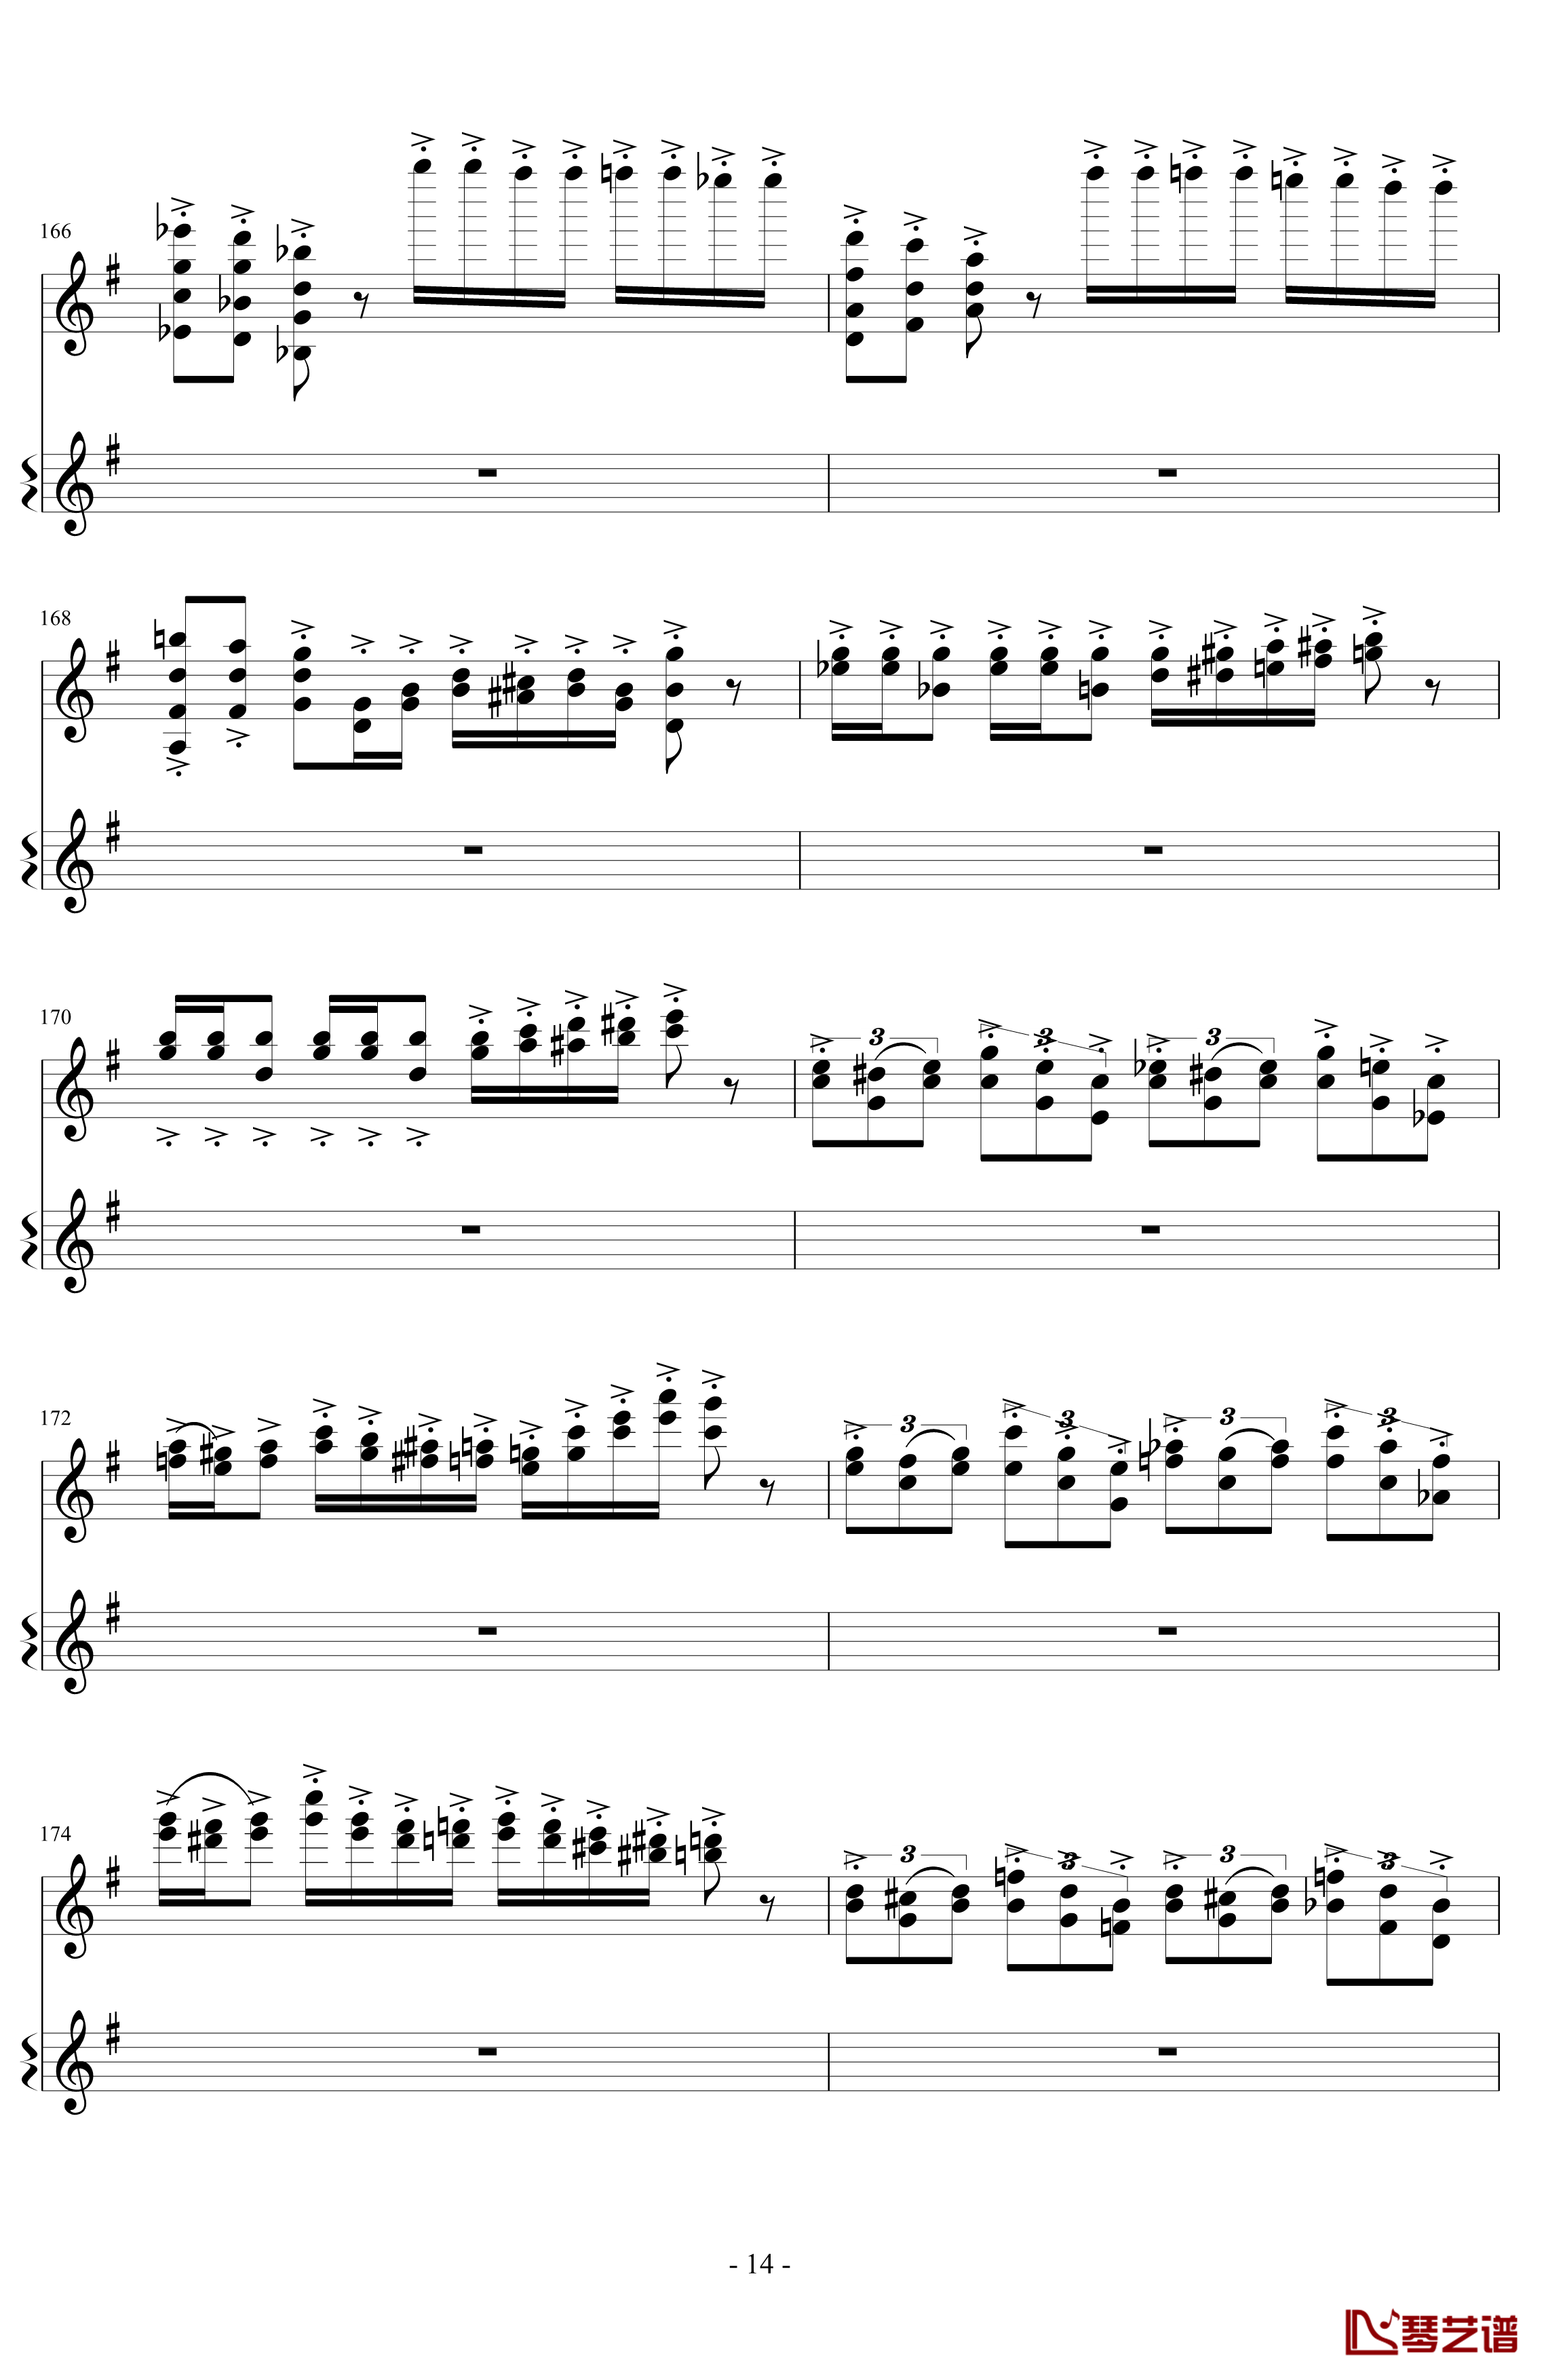 意大利国歌变奏曲钢琴谱-DXF14